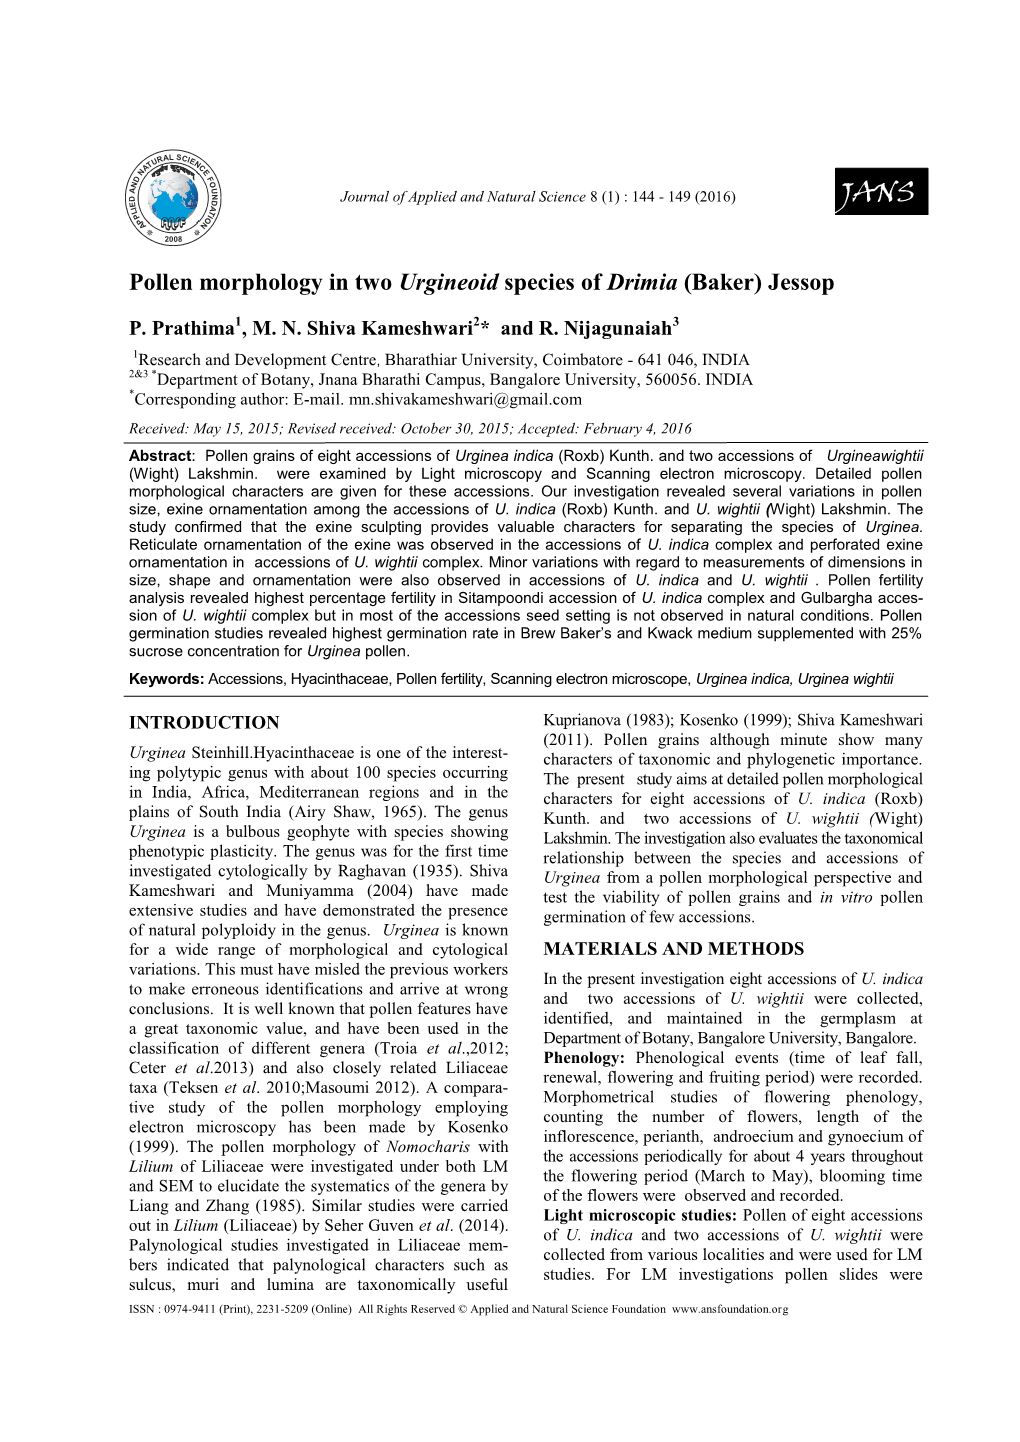 Pollen Morphology in Two Urgineoid Species of Drimia (Baker) Jessop